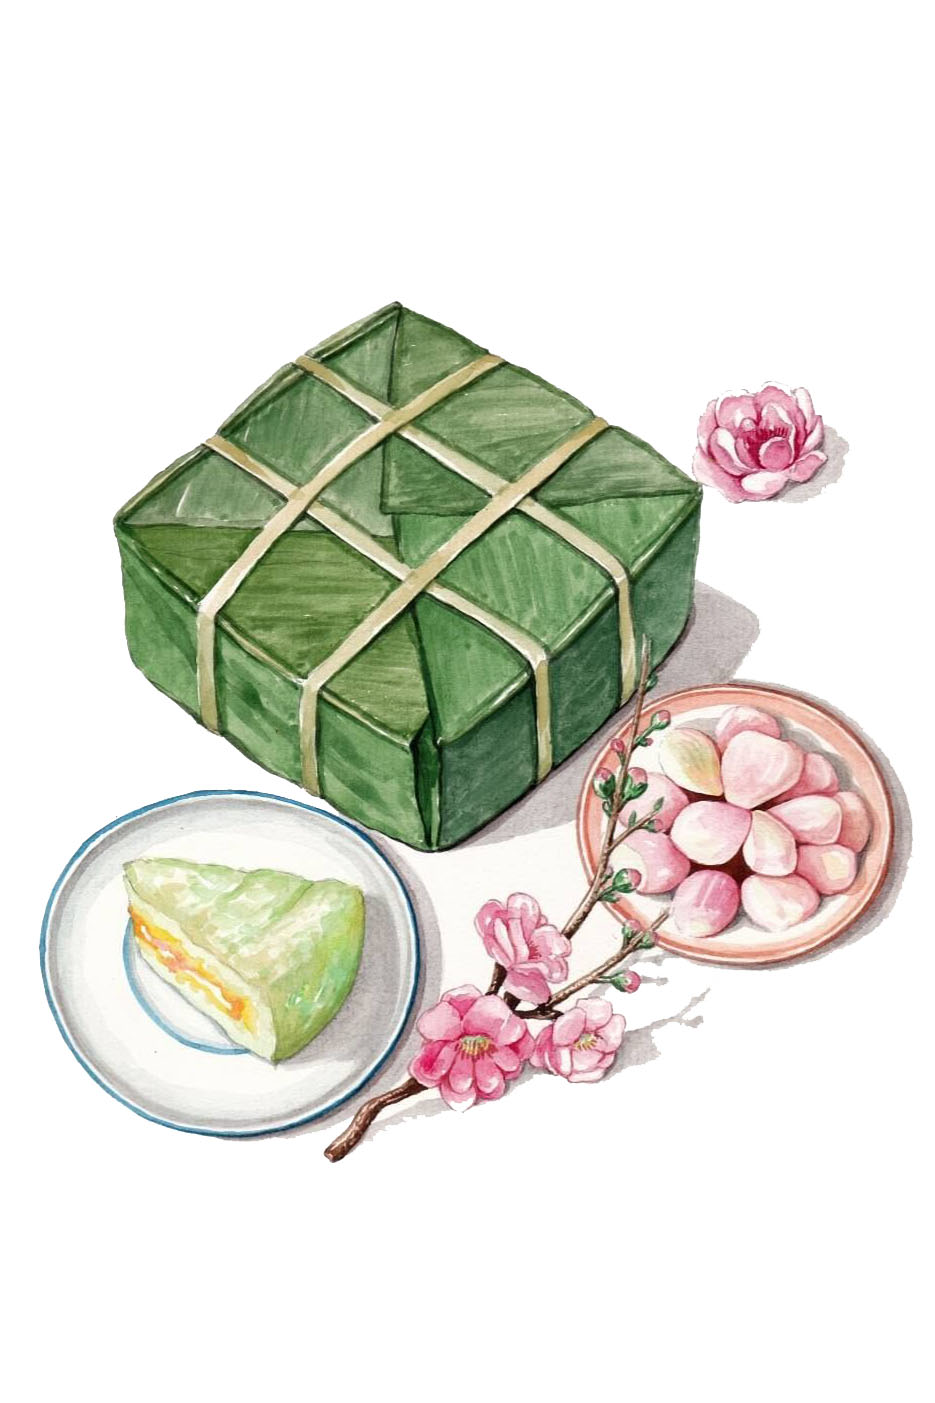 Hãy khám phá cách vẽ bánh chưng để tạo nên những bức tranh đậm chất ngày tết đặc trưng cho dân tộc Việt Nam. Bạn sẽ được tìm hiểu các bước vẽ một cái bánh chưng đẹp và sinh động trong video này.